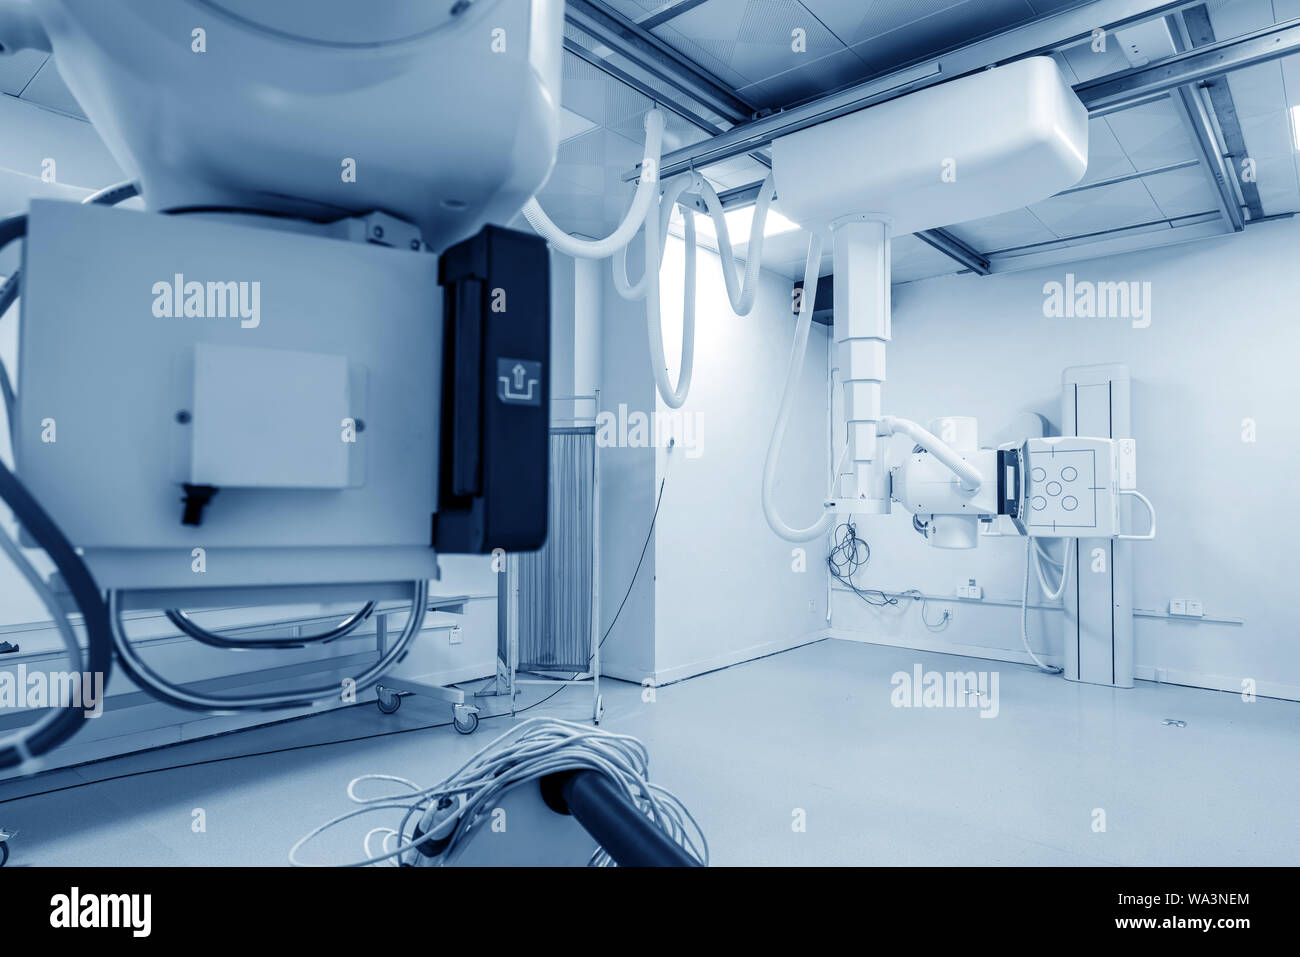 Krankenhaus X-Ray Maschine für Durchleuchtung Stockfoto